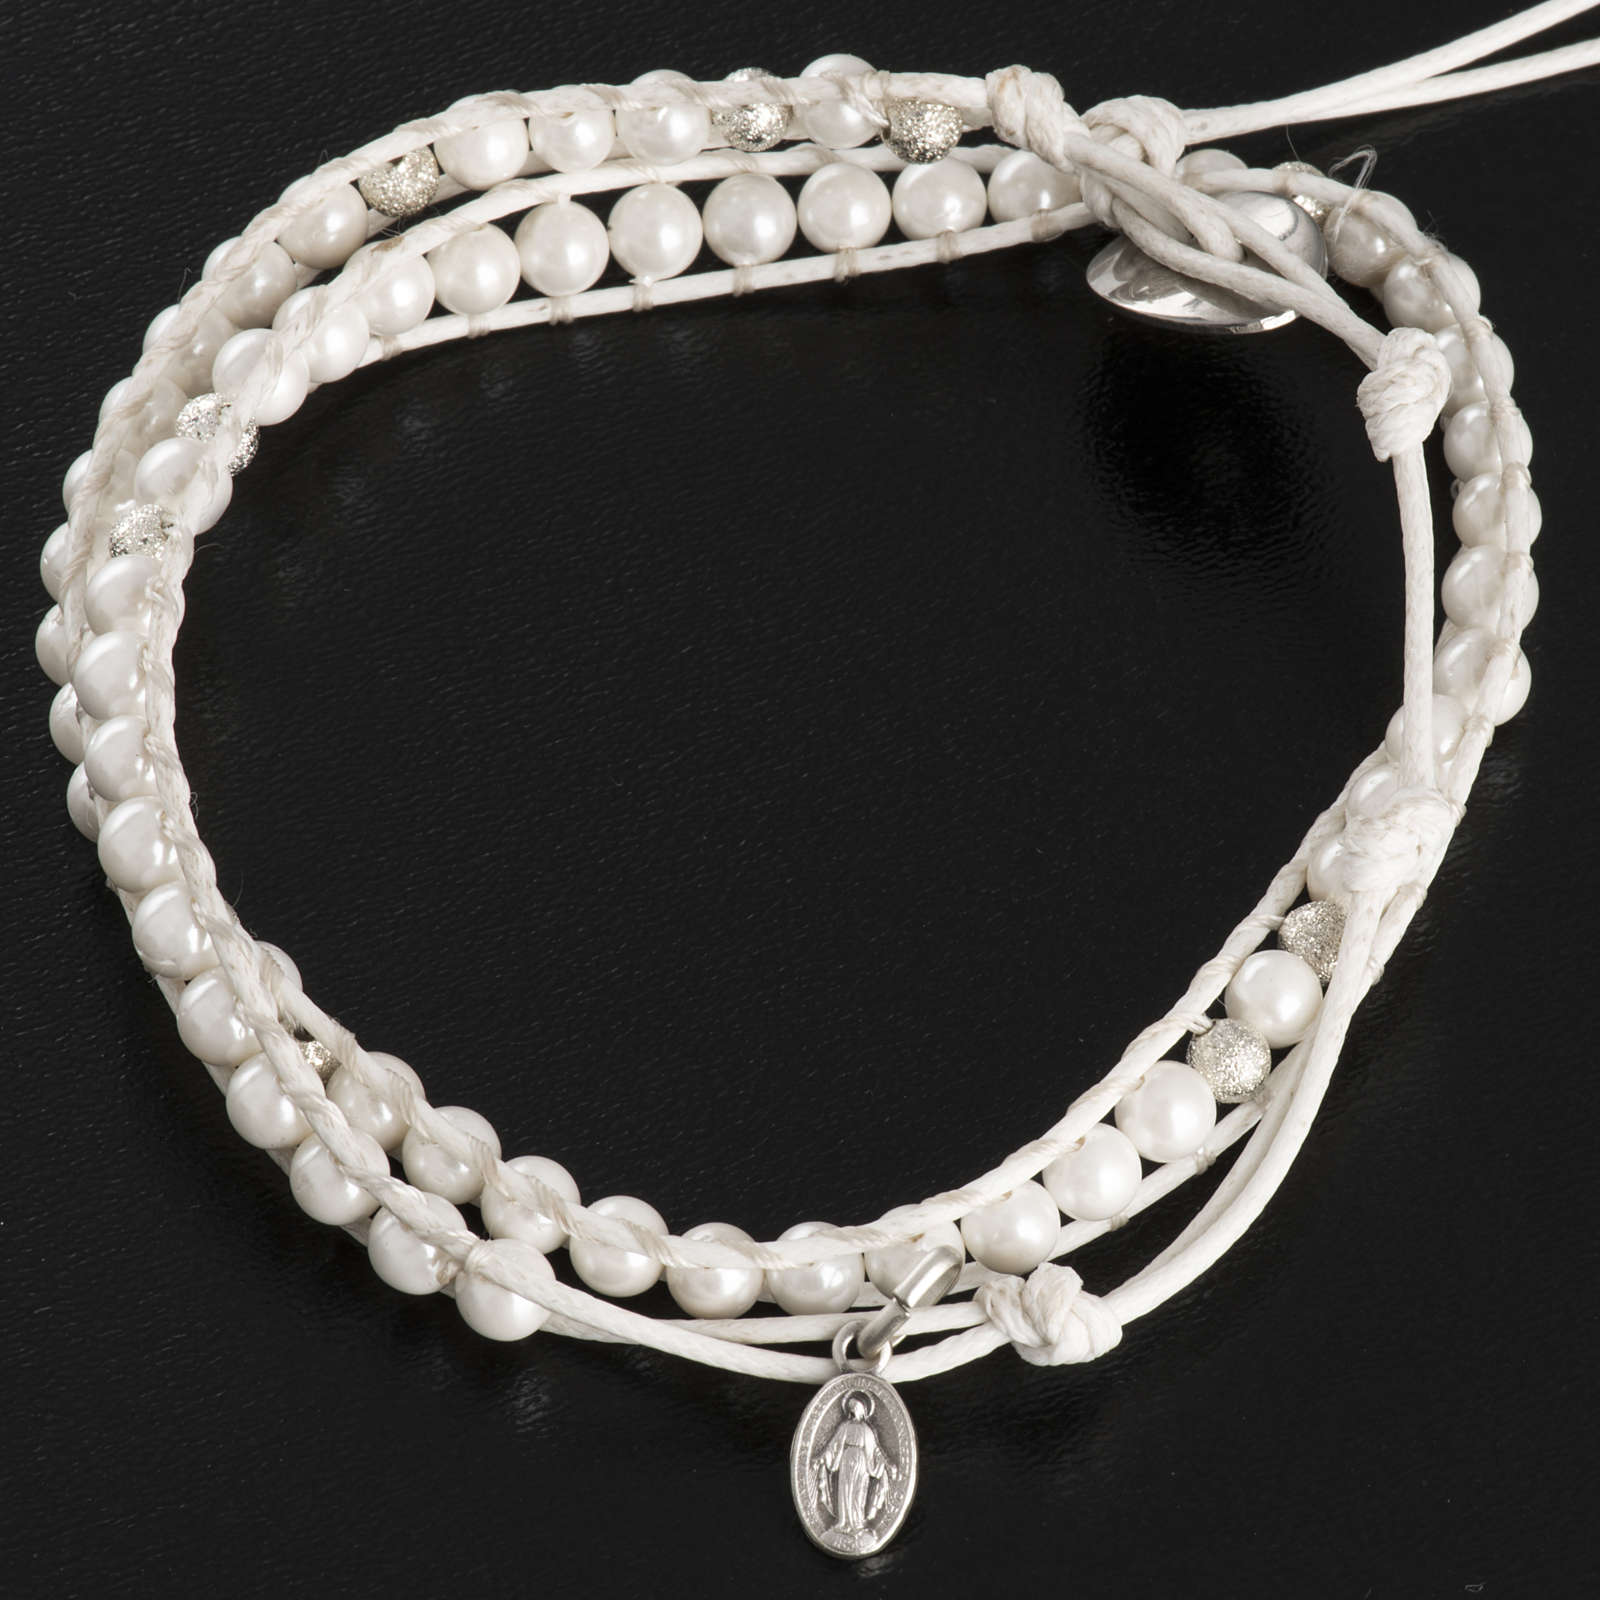 Mother of pearl bracelet 4mm | online sales on HOLYART.co.uk